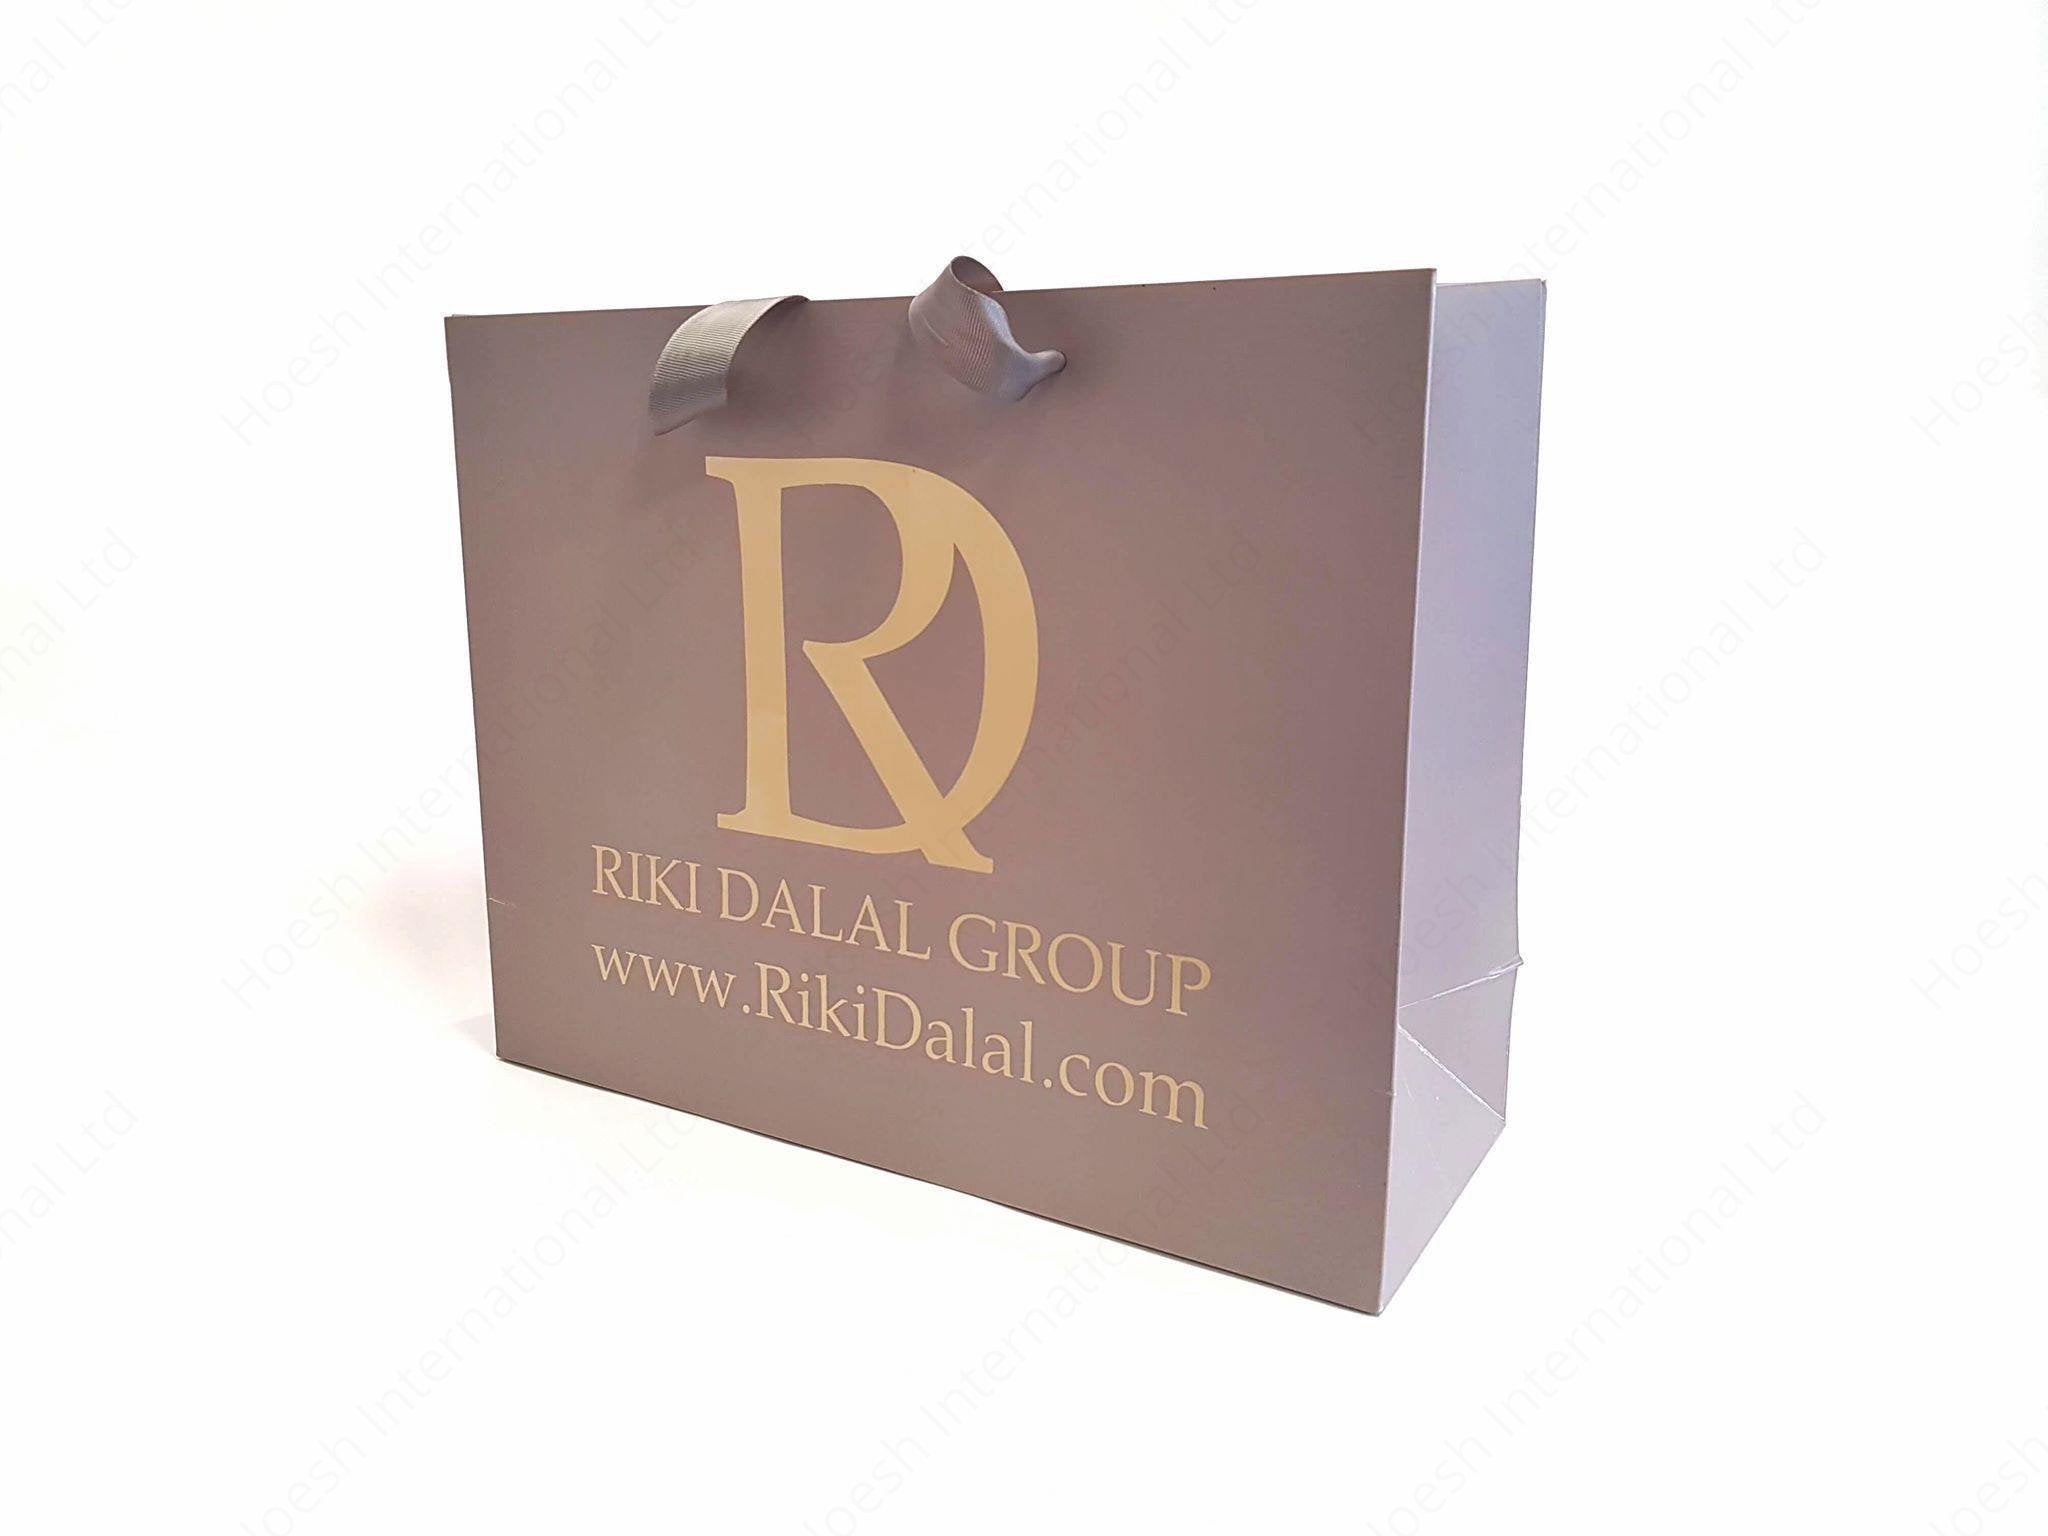 Premium Kraft Paris Boutique Bags - Hoesh International Ltd